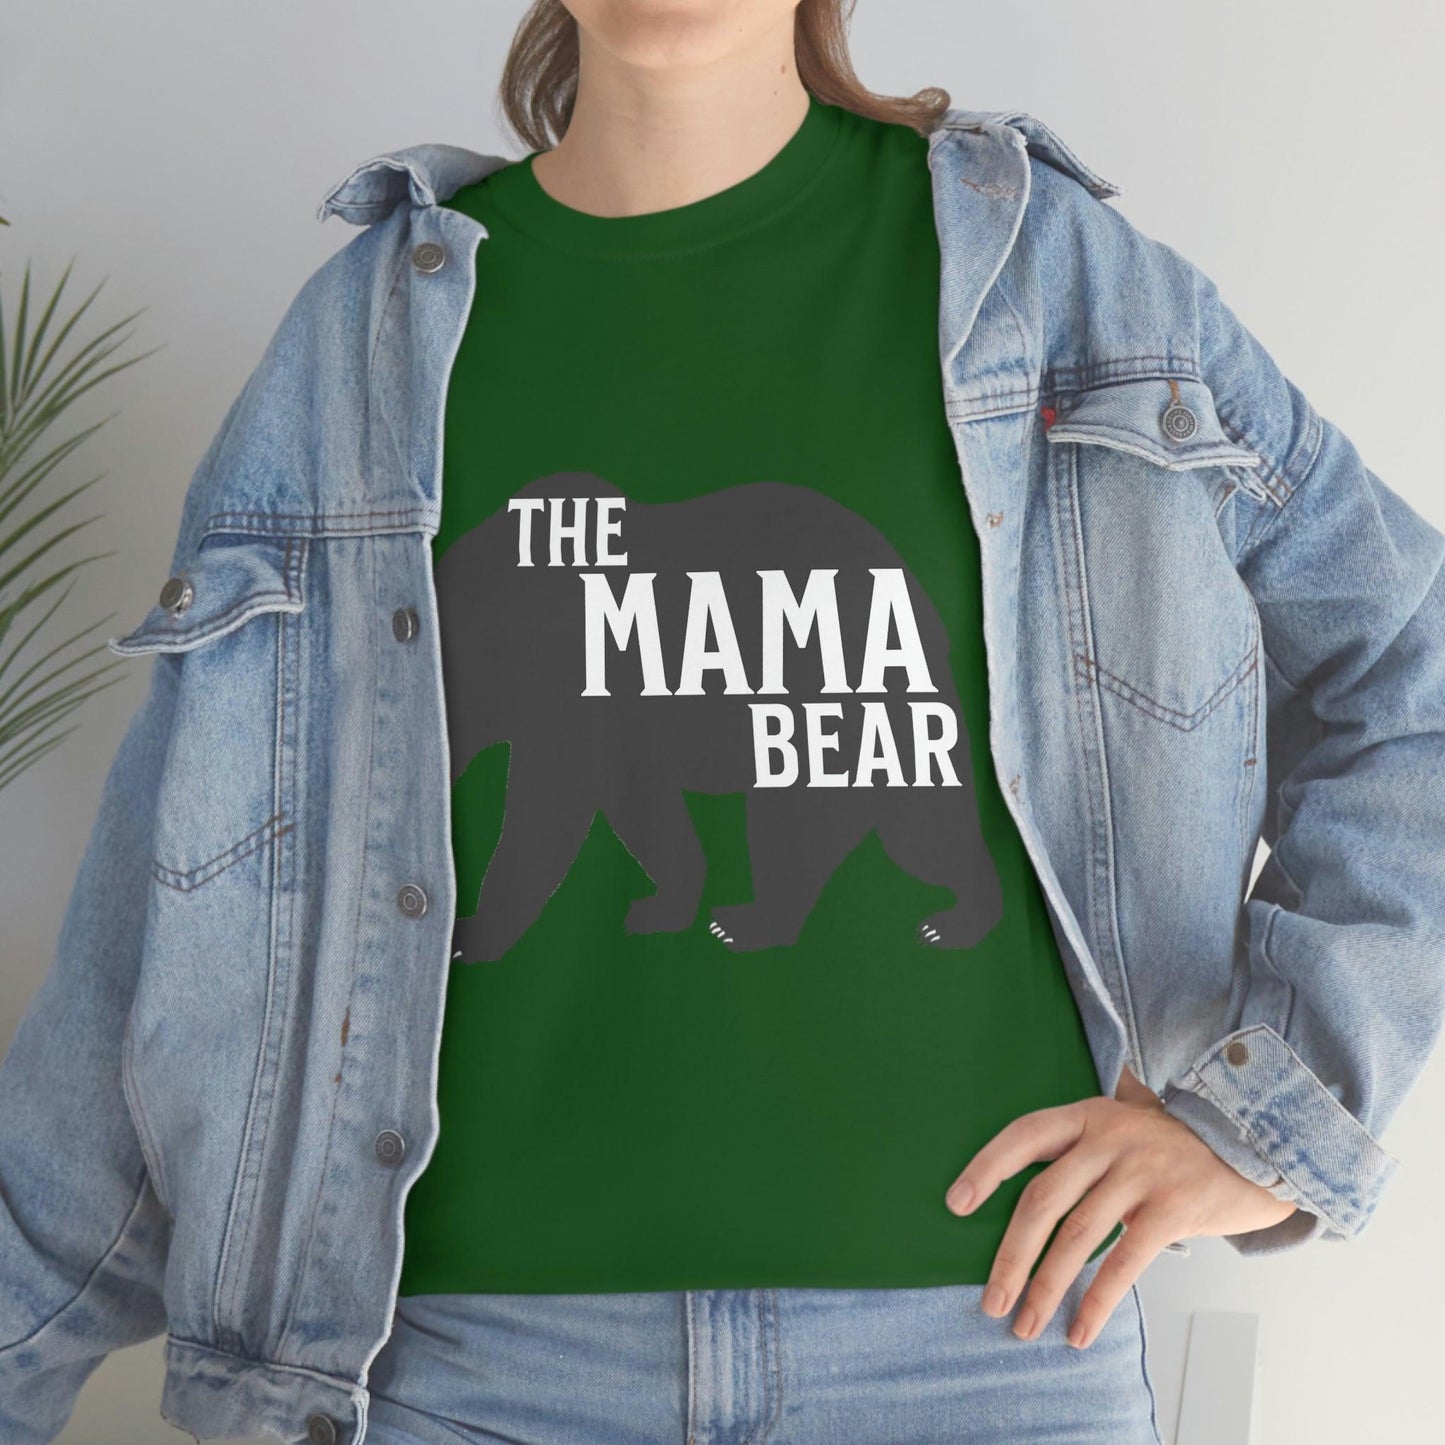 The Mama bear Tee - Giftsmojo